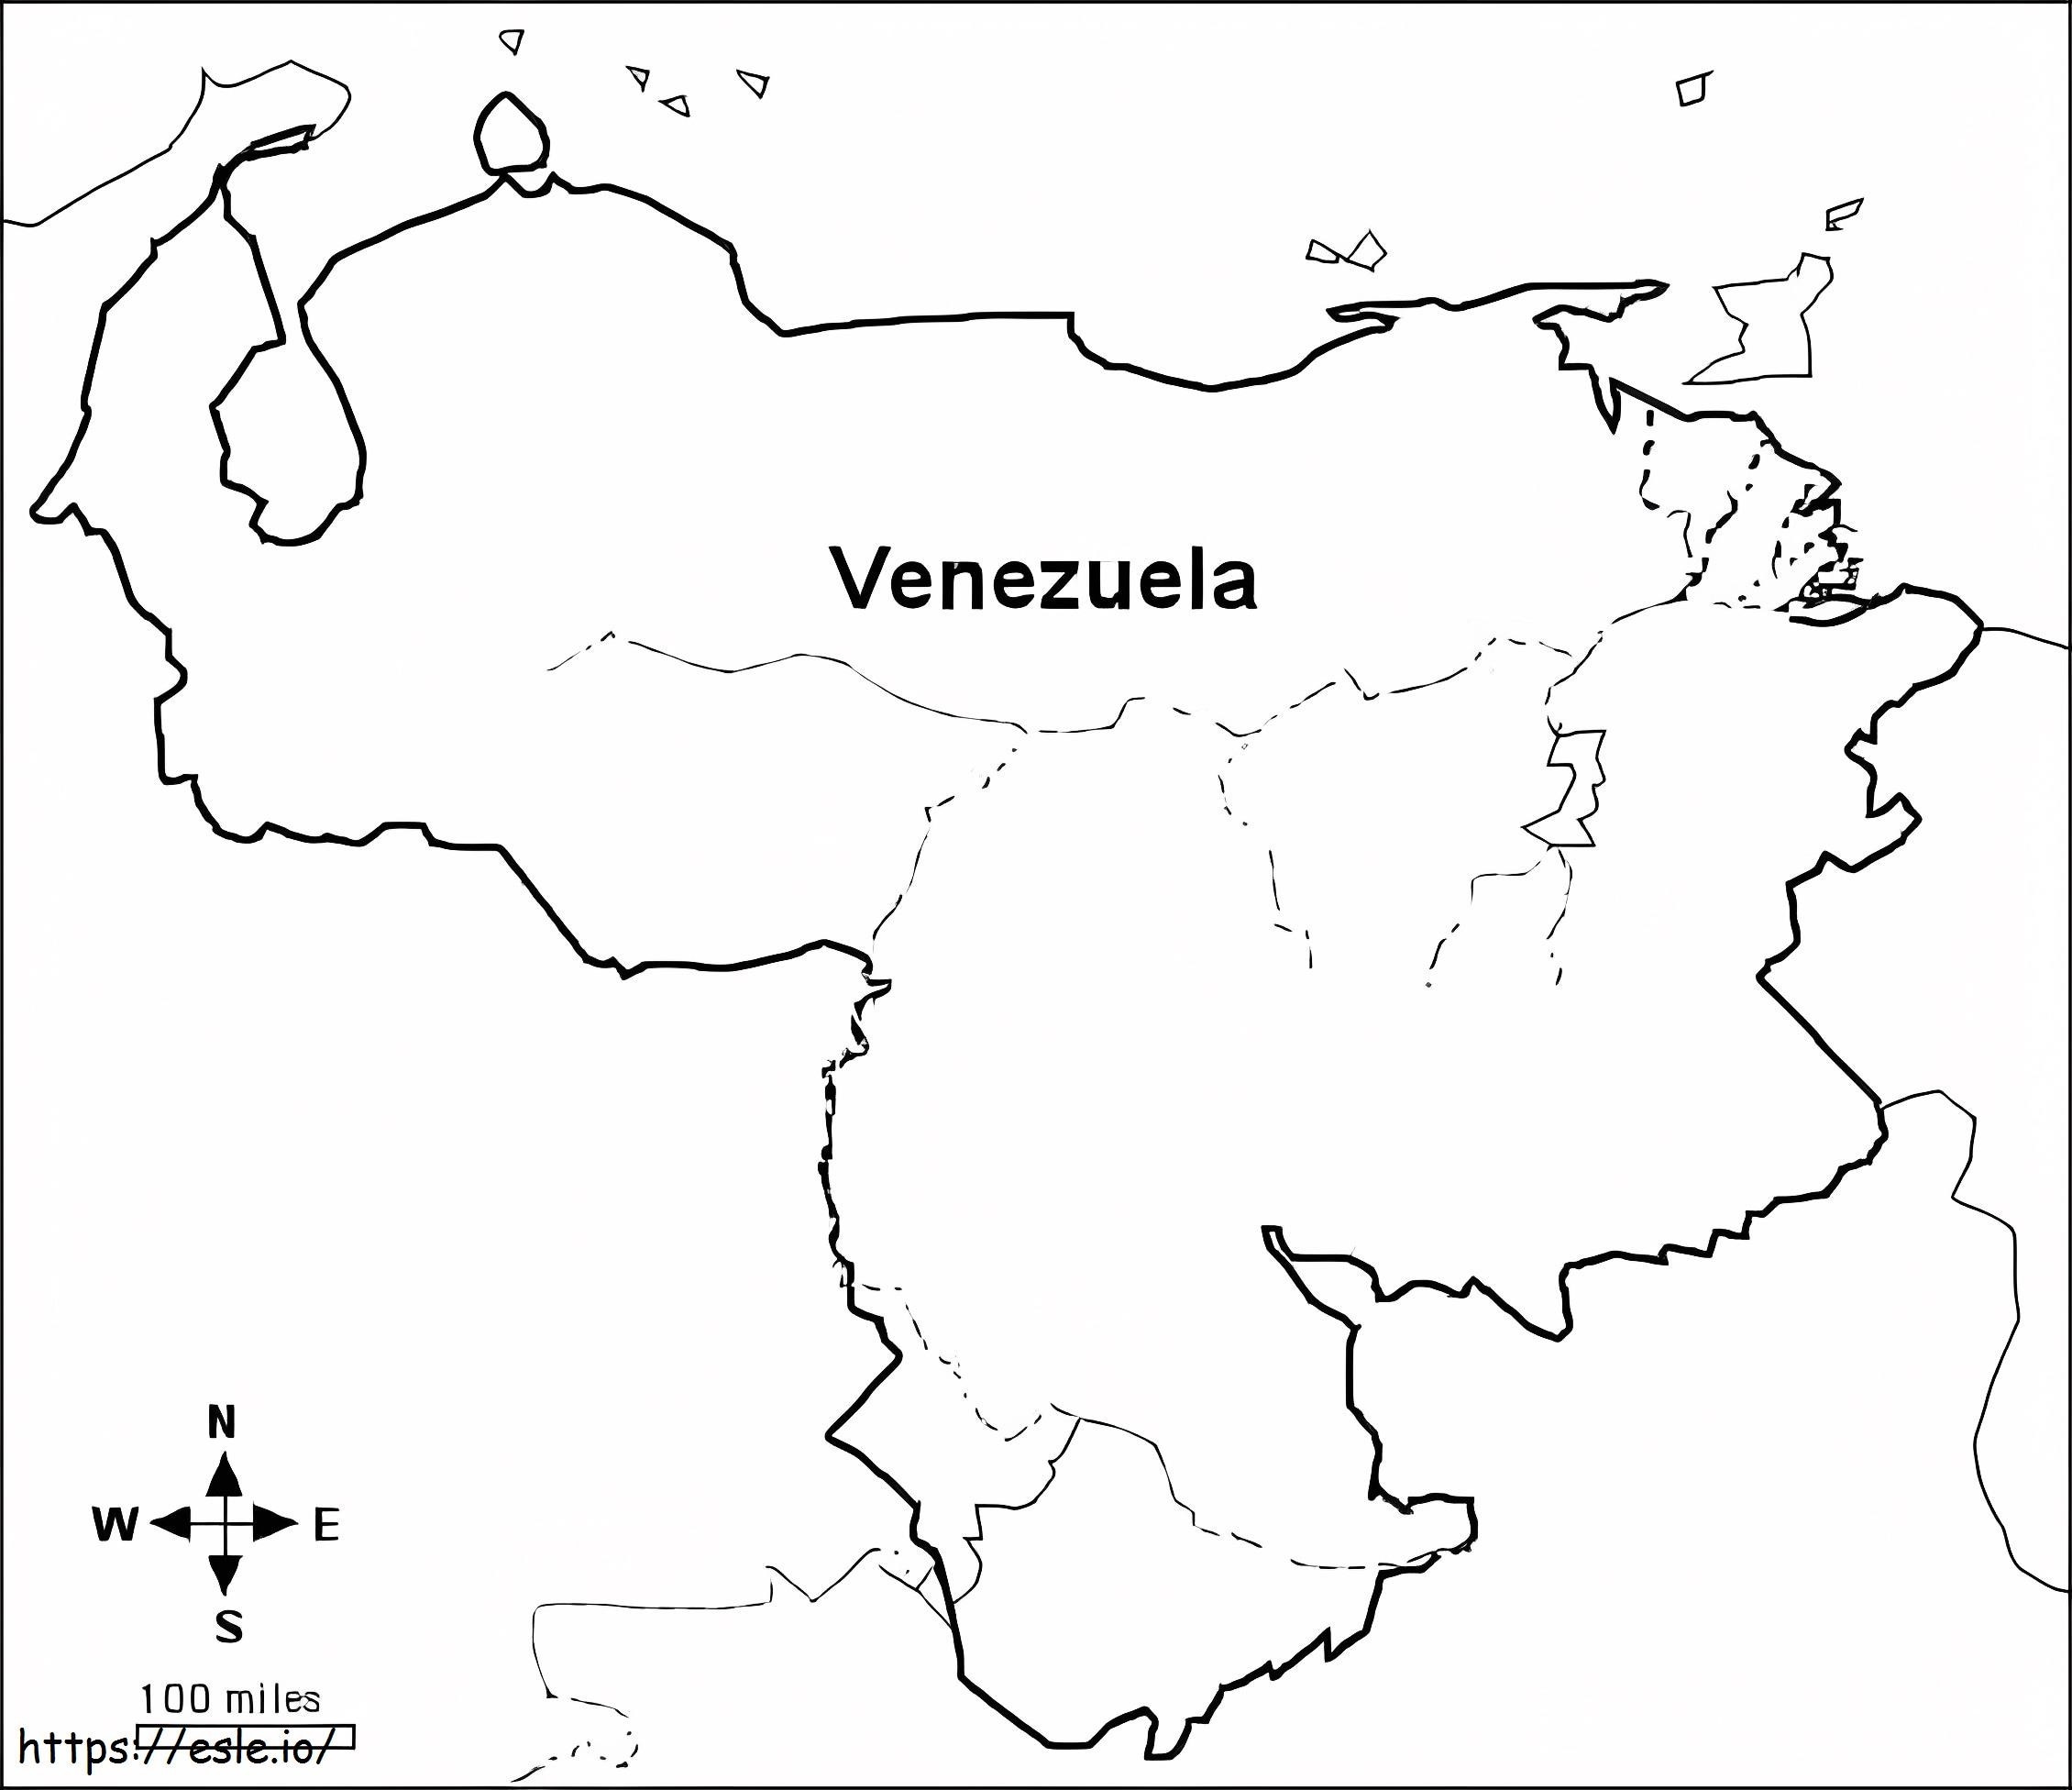 Darmowa mapa Wenezueli do druku w jakości HD do kolorowania kolorowanka